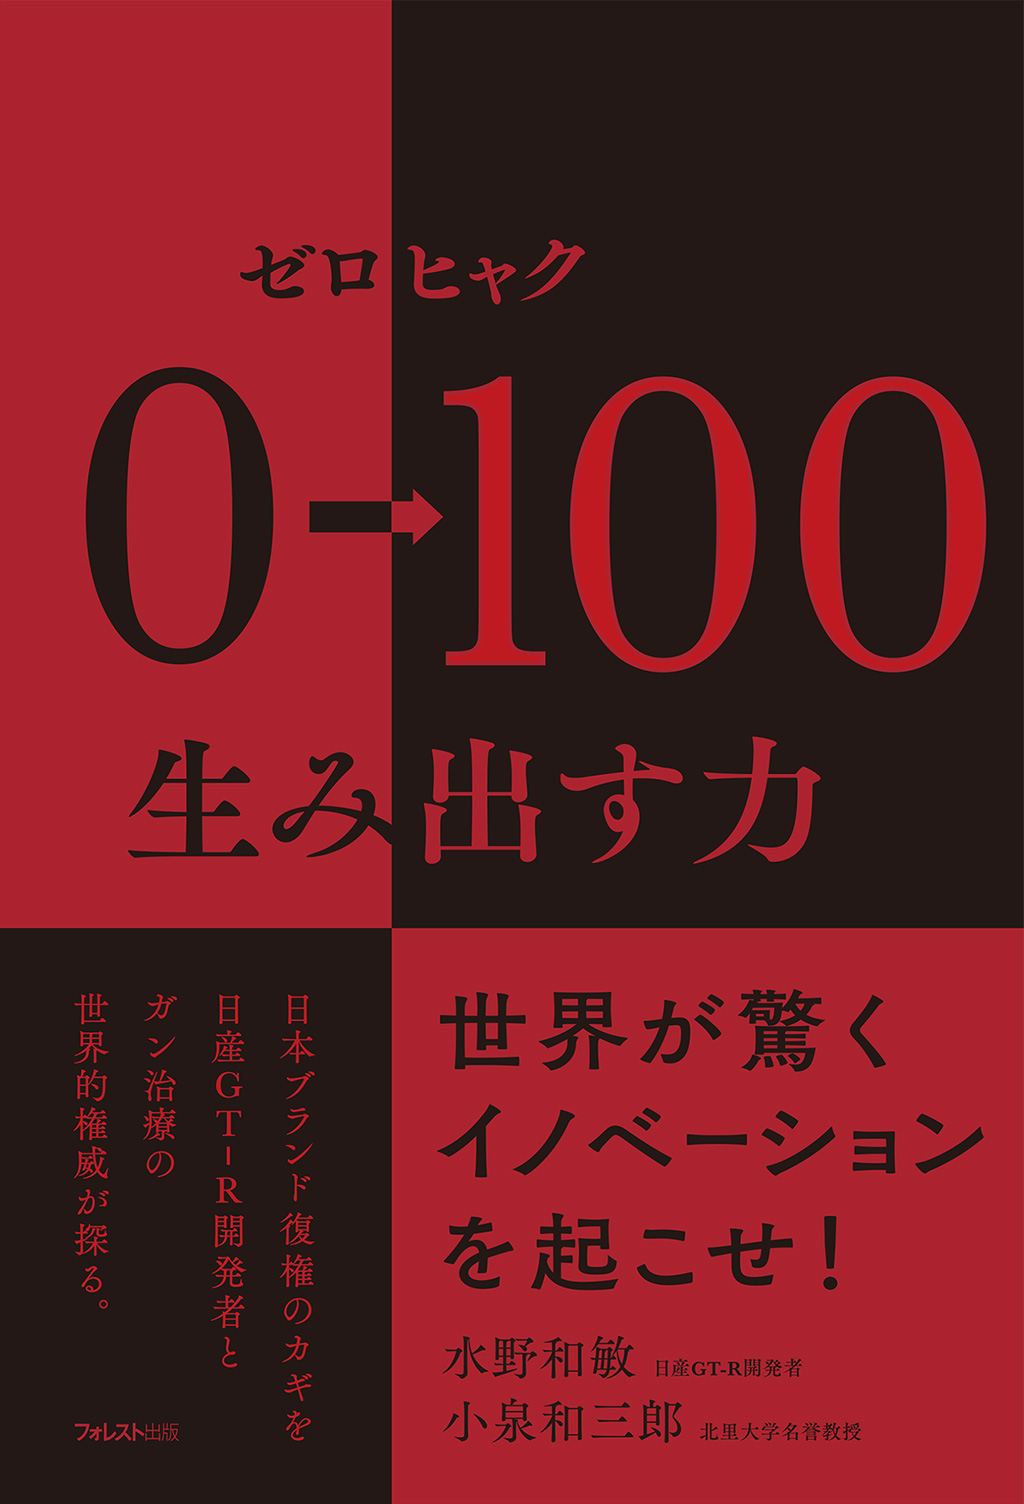 フォレスト出版『0→100(ゼロヒャク) 生み出す力』